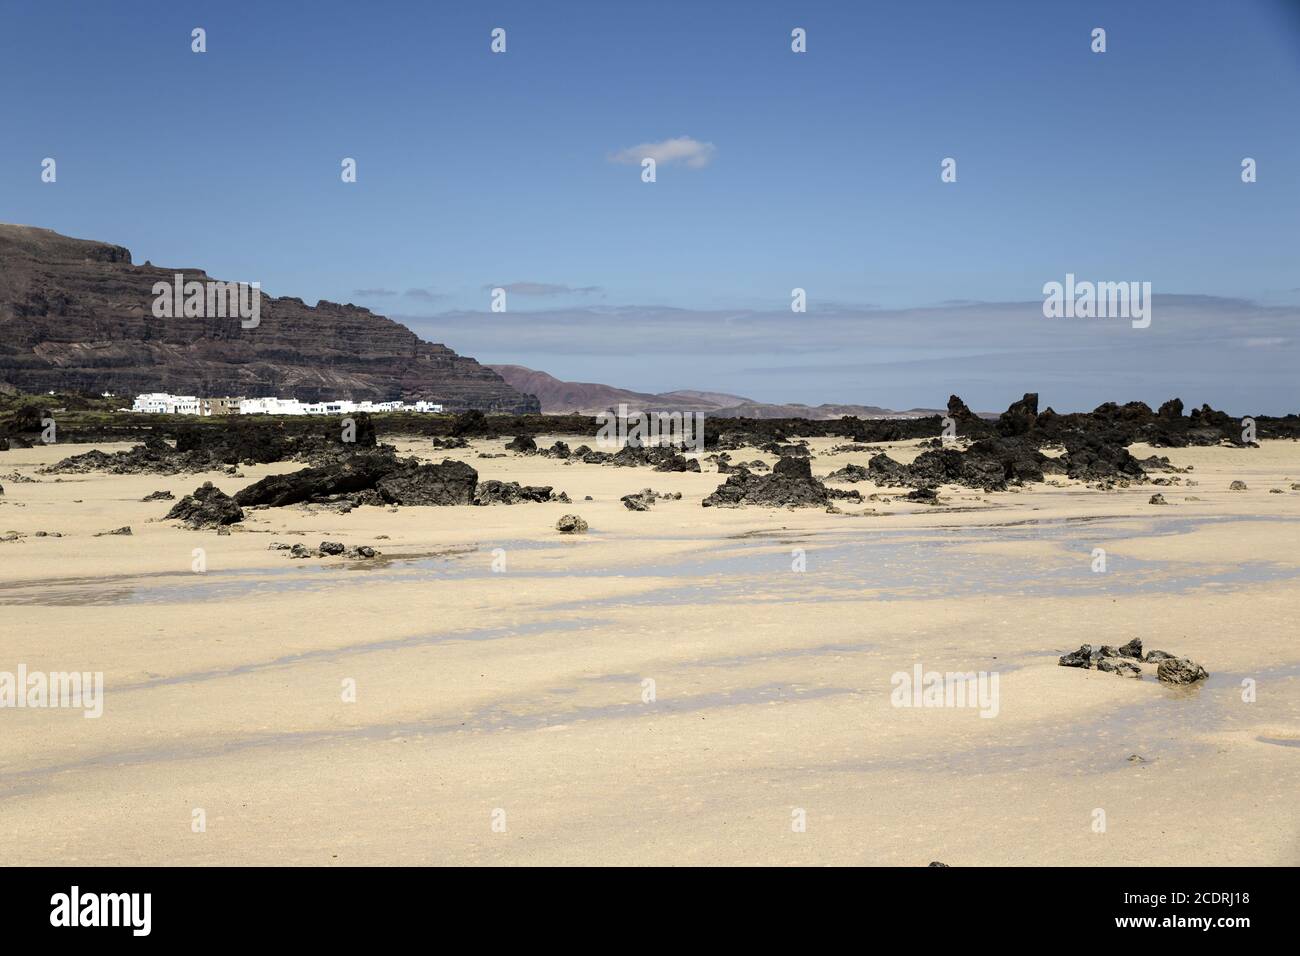 Plage de sable avec pierres de lave à Orzola sur Lanzarote, îles Canaries, Espagne, Europe Banque D'Images